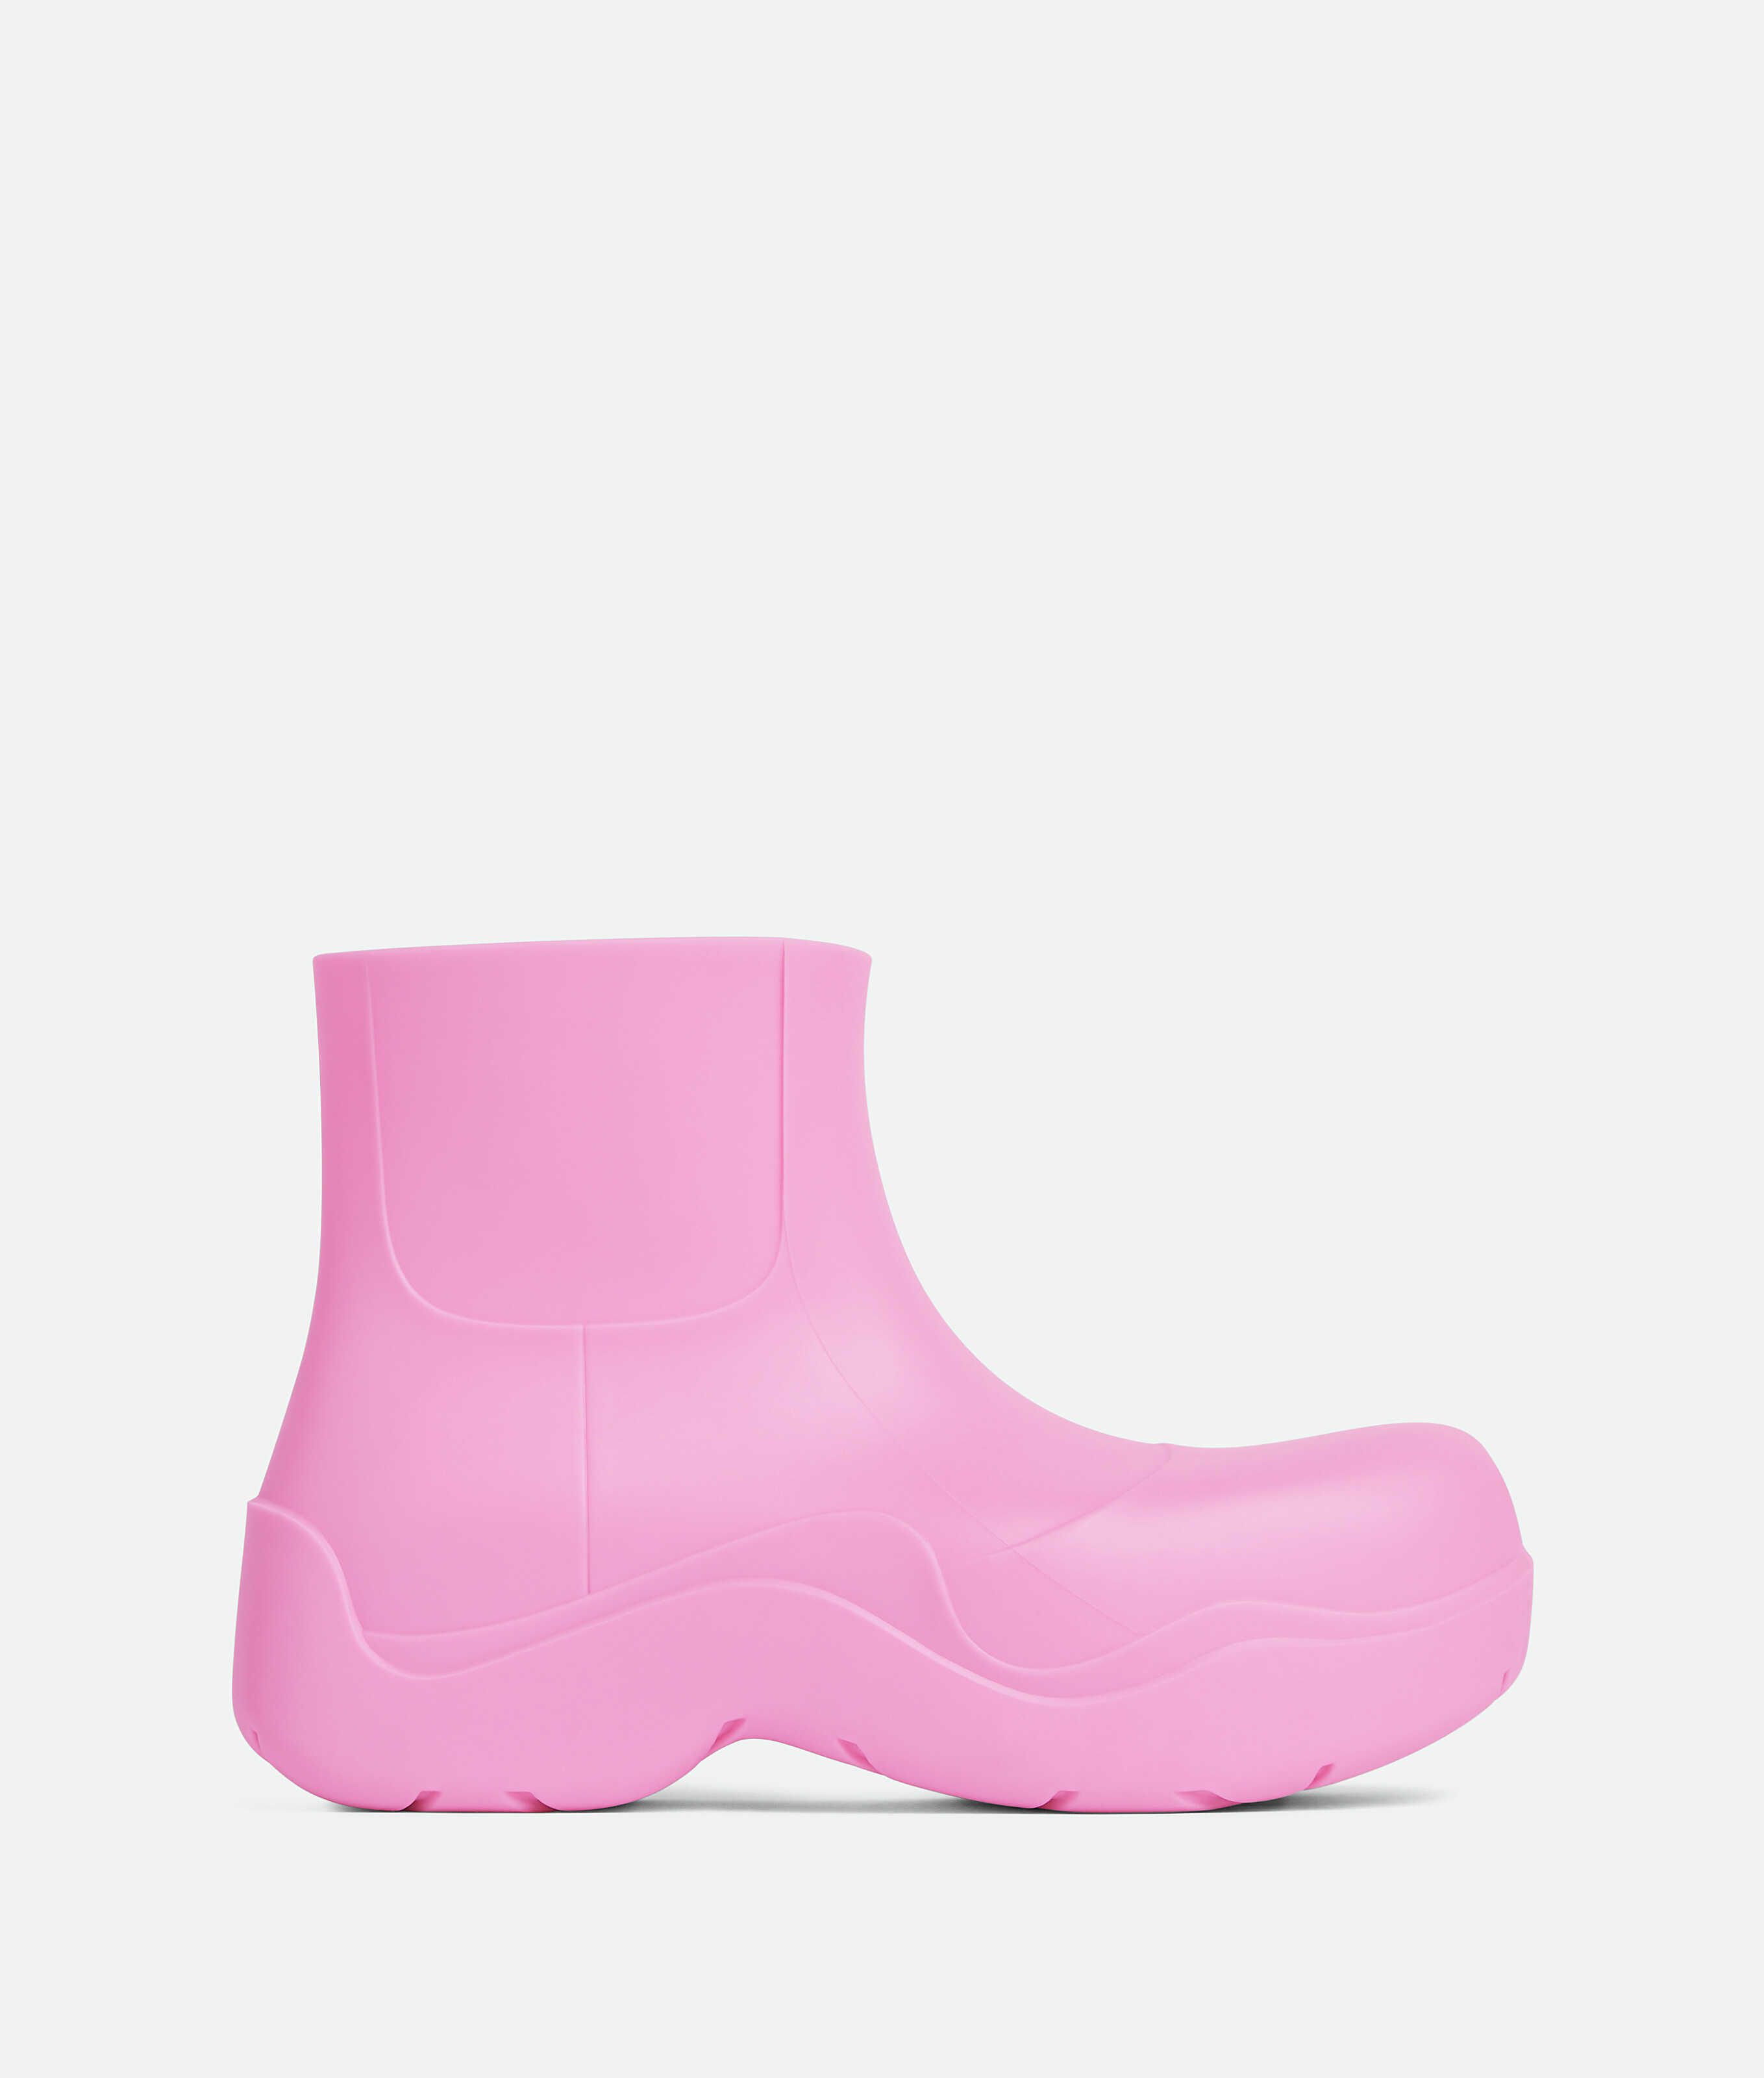 Bottega Veneta® Women's Puddle Ankle Boot in Gloss. Shop online 